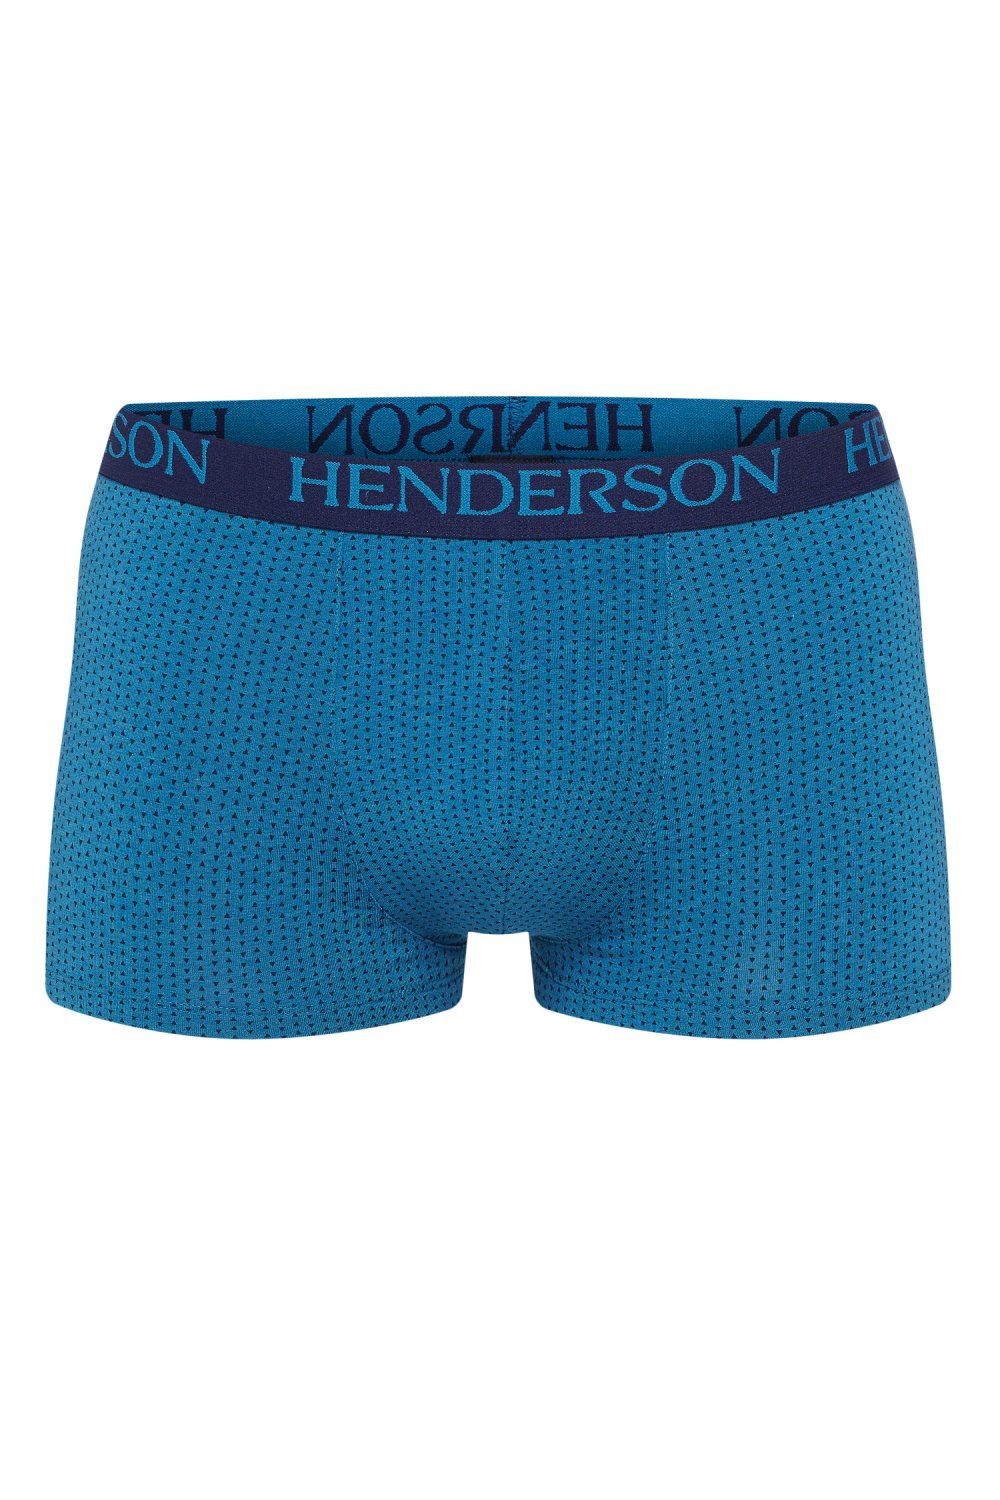 Pánské boxerky 37797 - HENDERSON tmavě modrá M